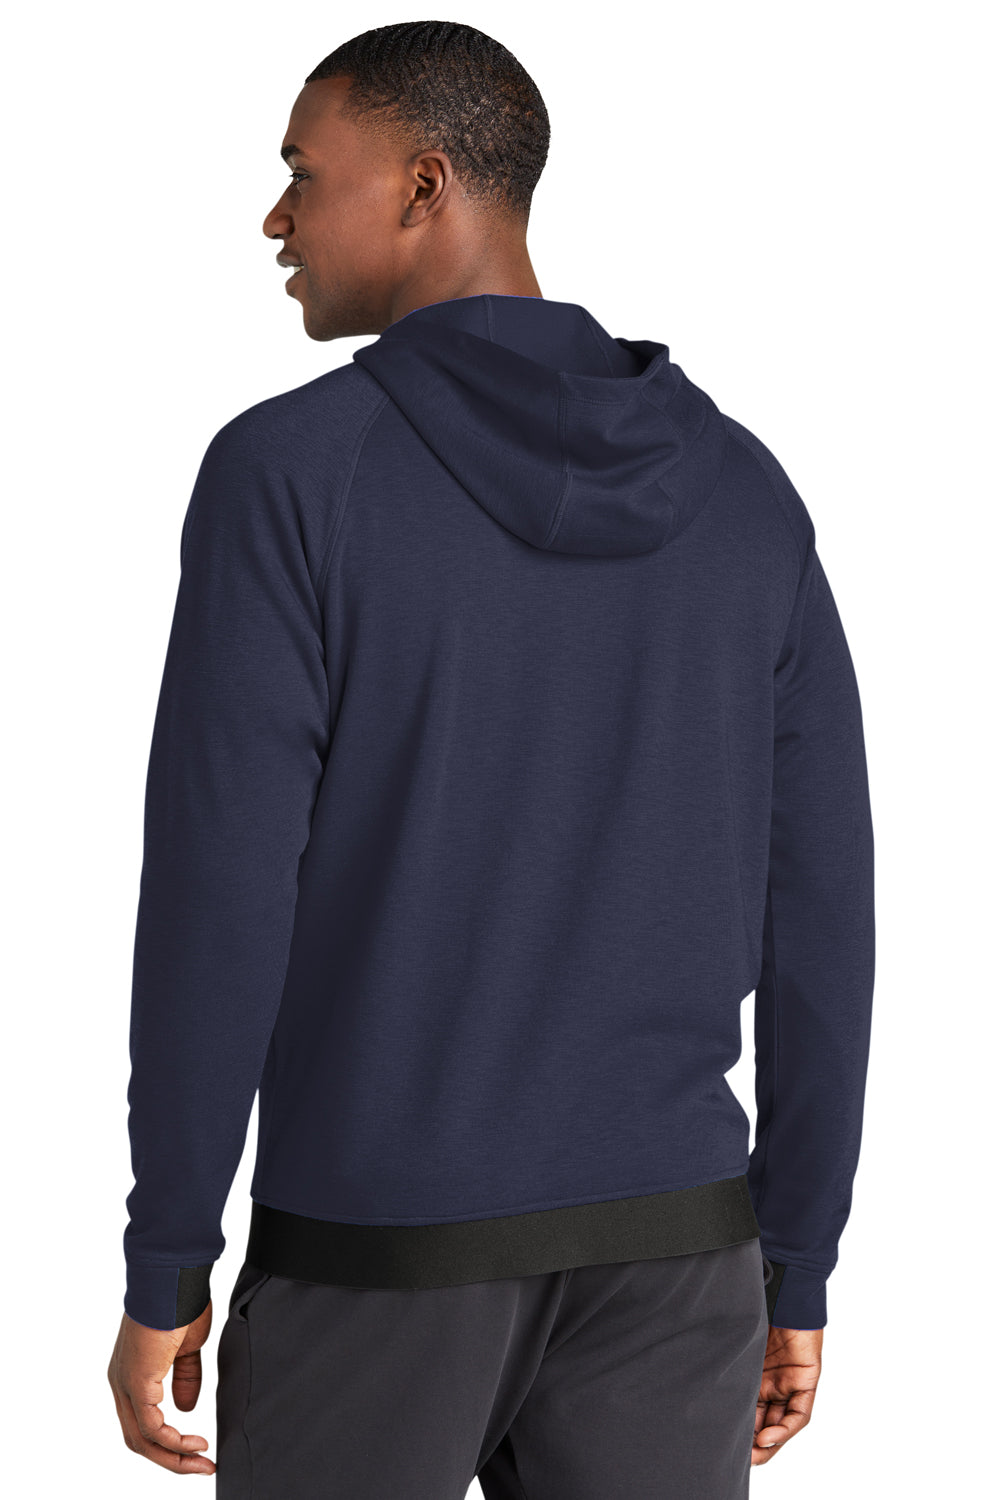 Sport-Tek ST570 Strive PosiCharge Full Zip Hooded Sweatshirt Hoodie True Navy Blue Back